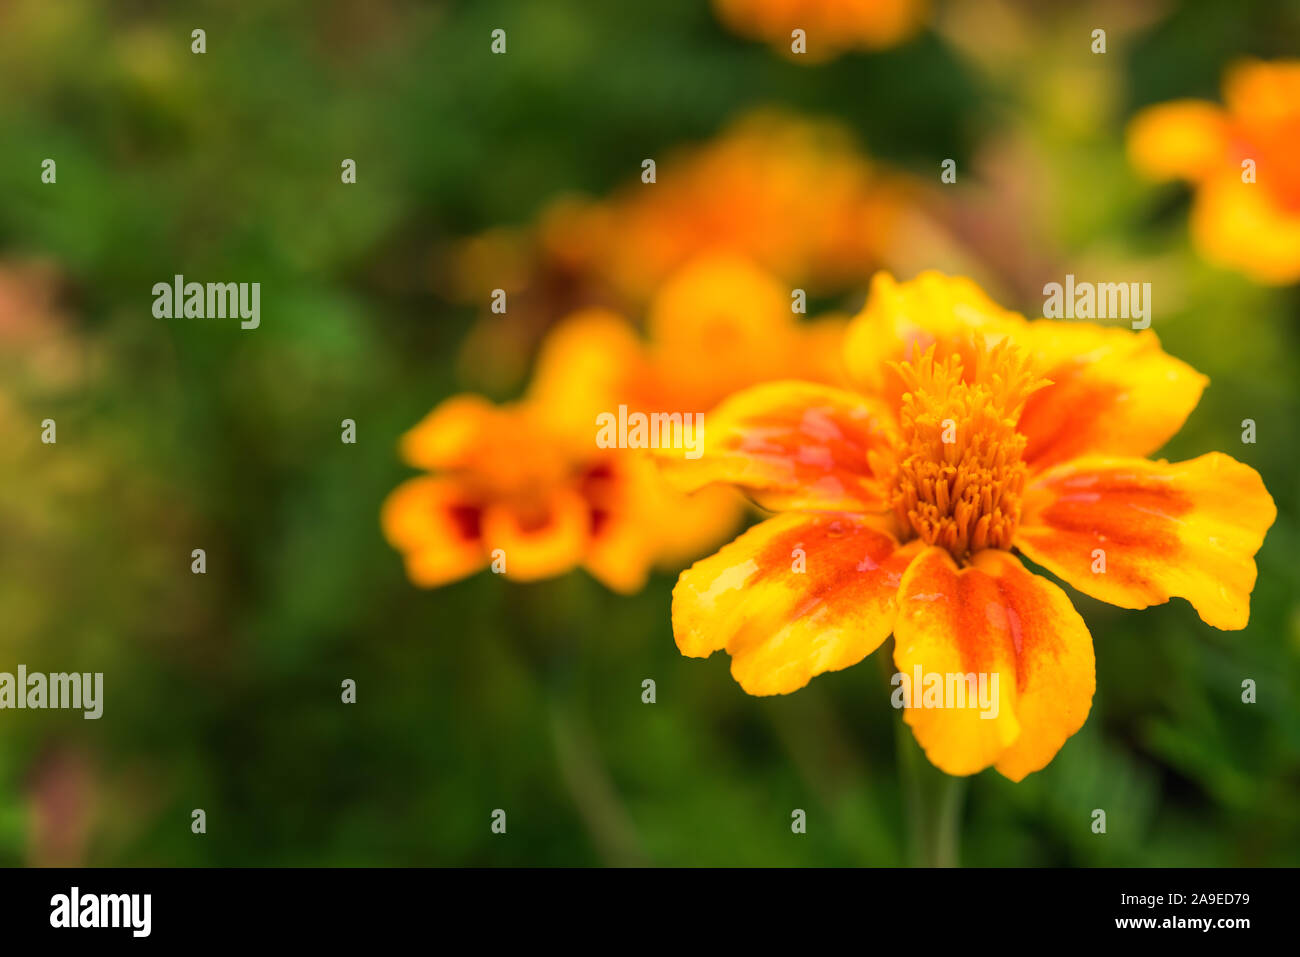 Eine bunte, helle, gelb und orange rot tagetes Blume mit Unkonzentrierten grünes Laub und ein paar Blumen auf Hintergrund. Selektive konzentrieren. Grußkarte Stockfoto